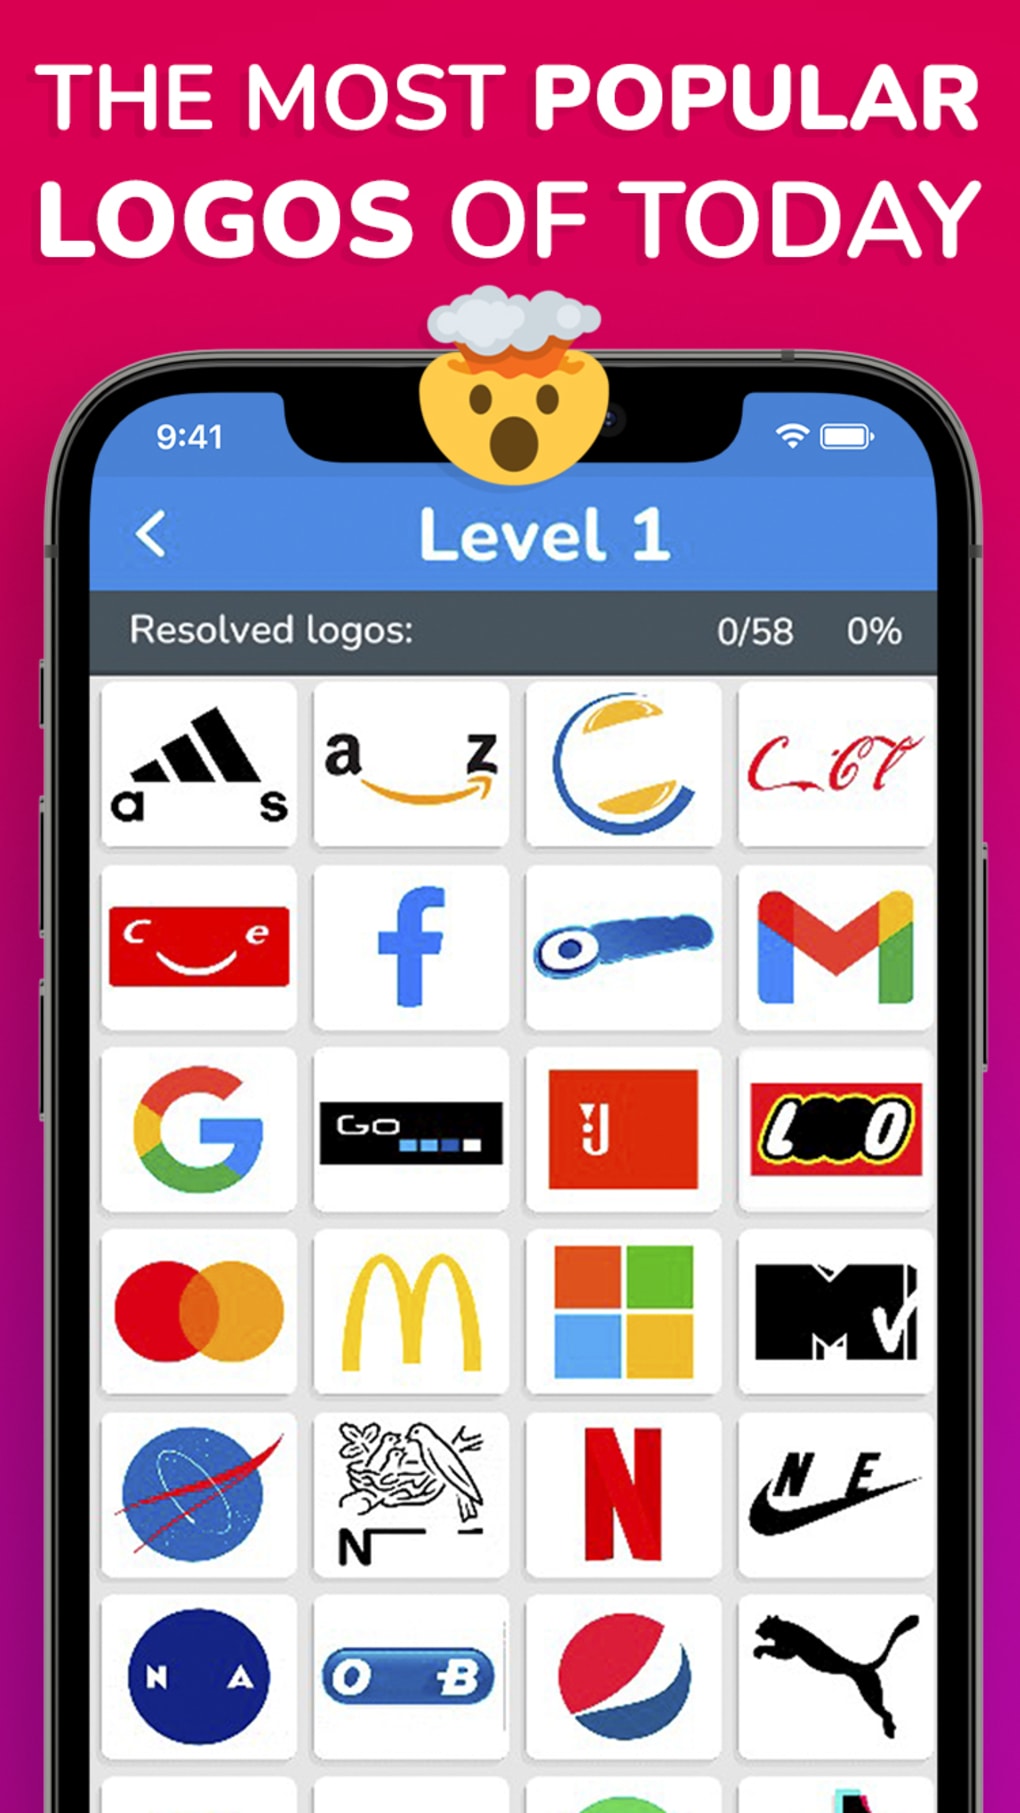 Adivinha o campeão lol - QUIZ – Apps no Google Play